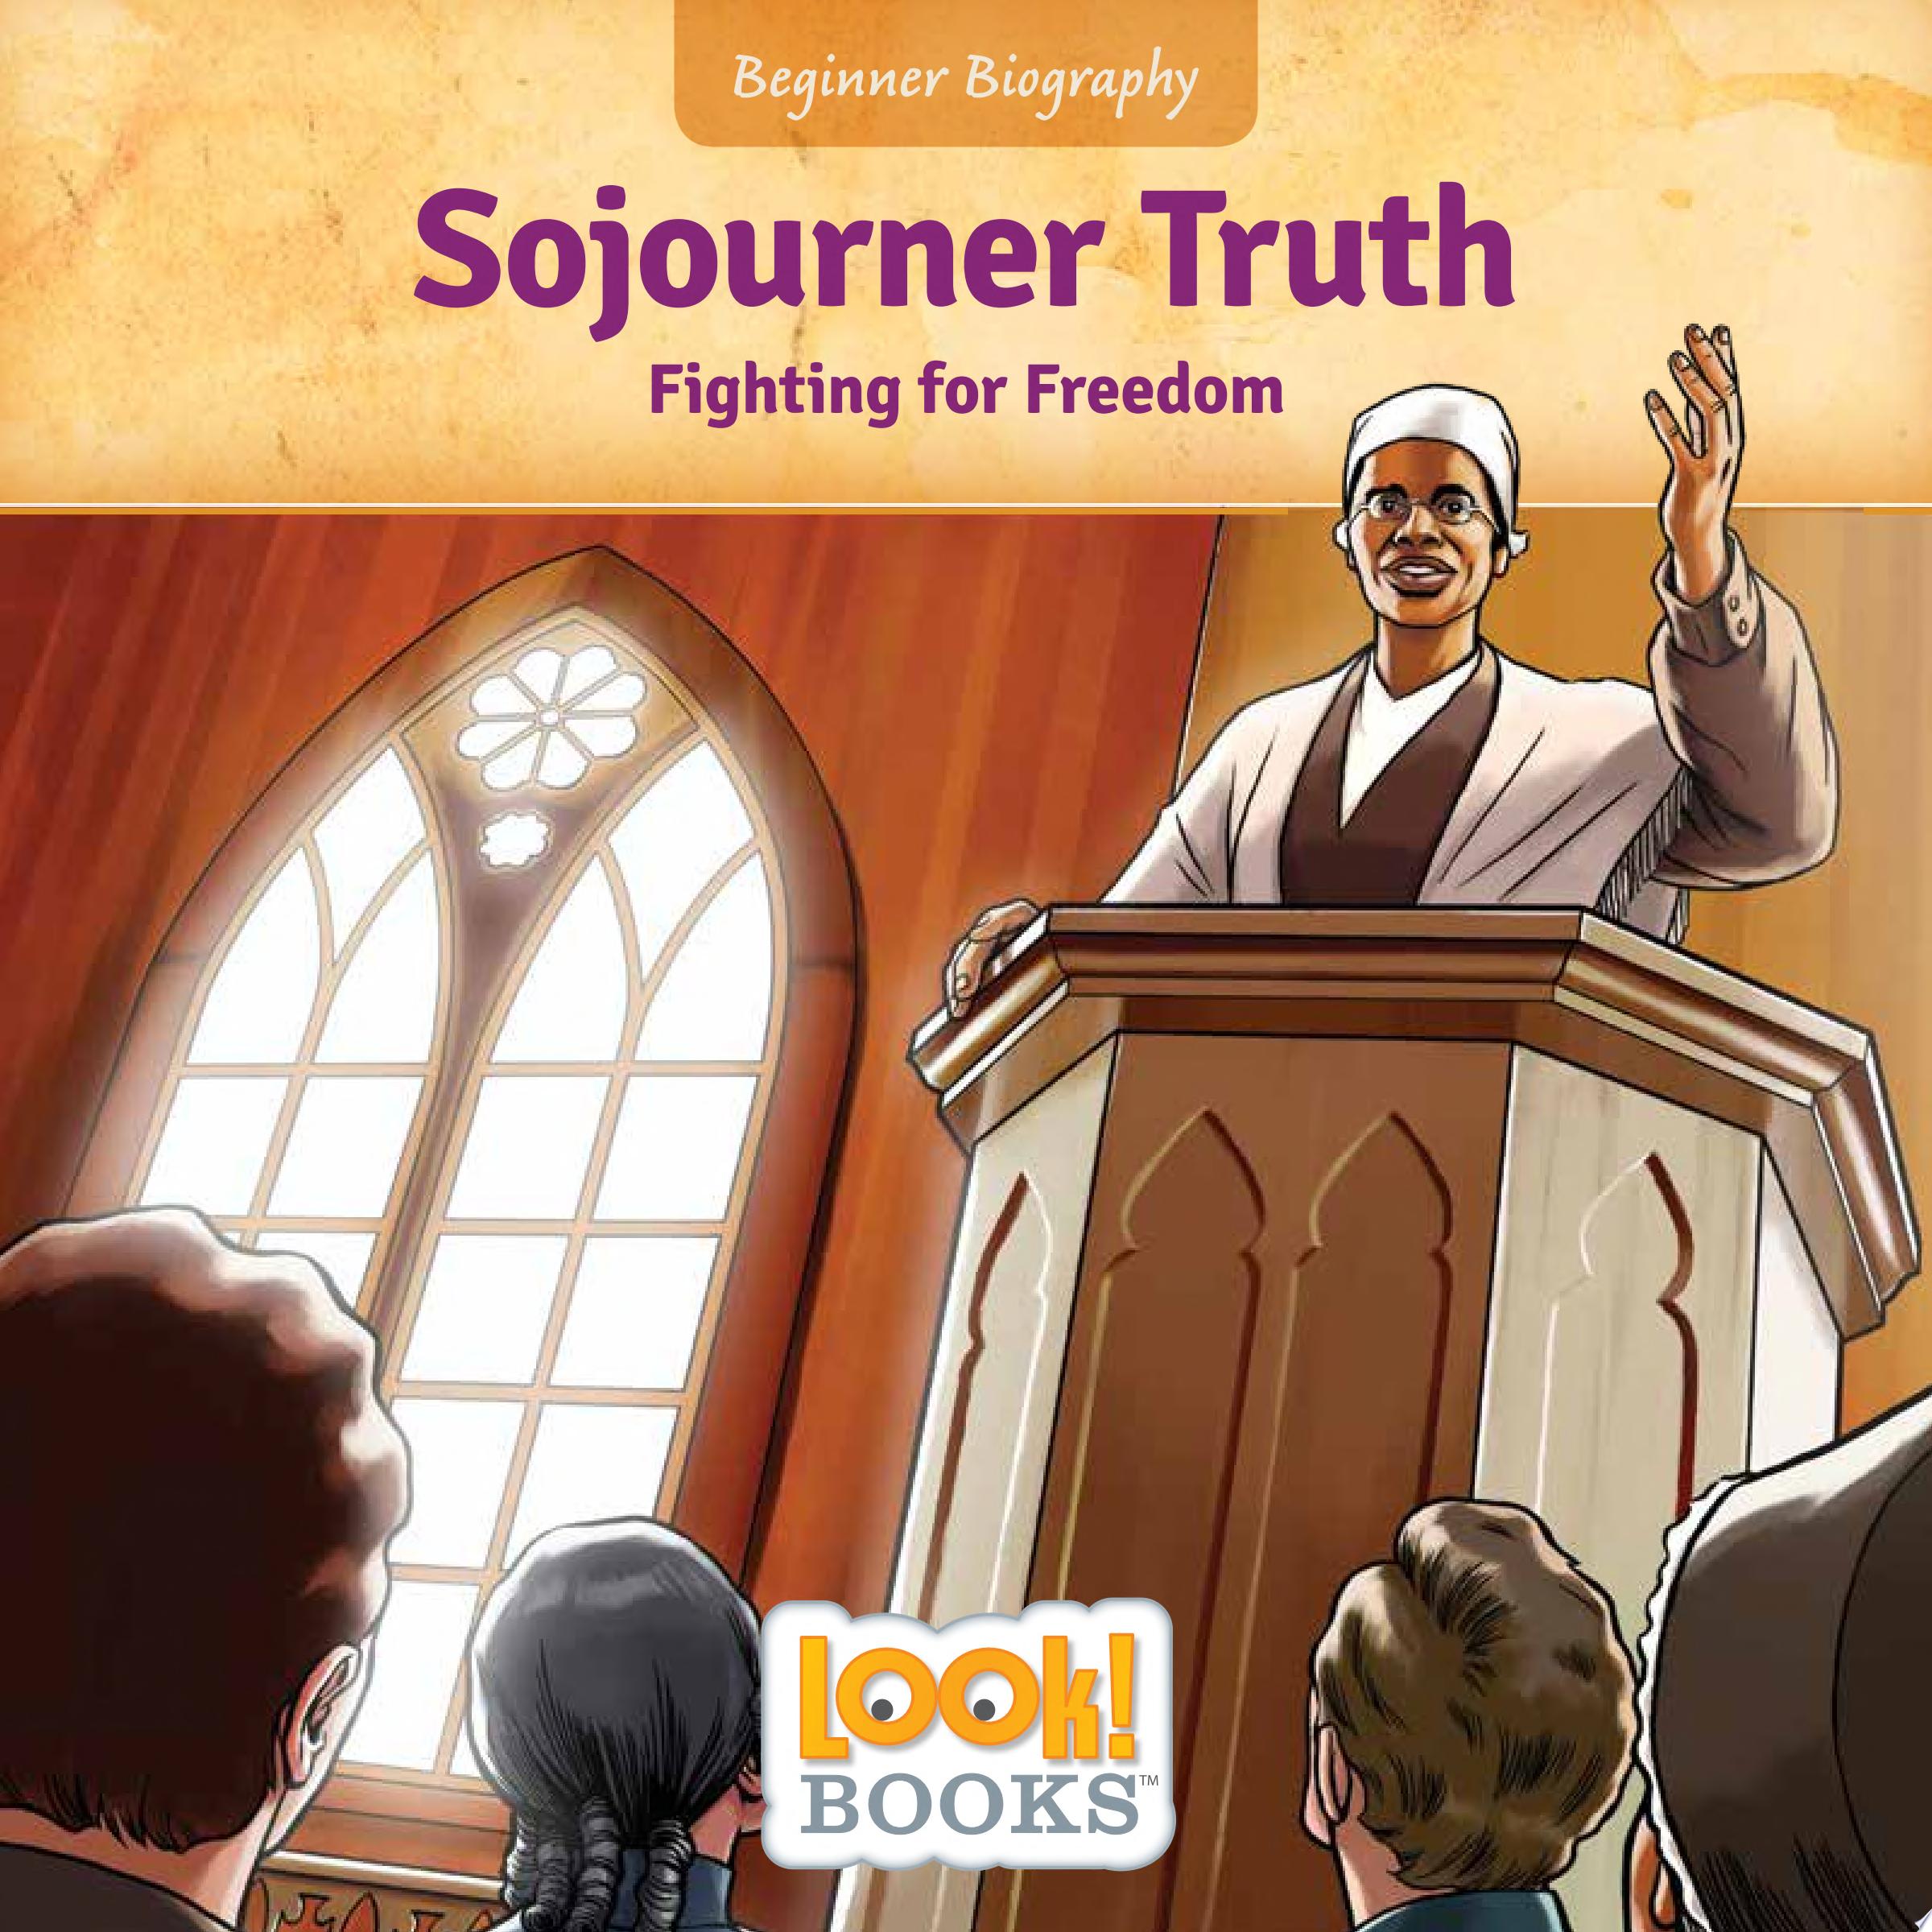 Image for "Sojourner Truth"